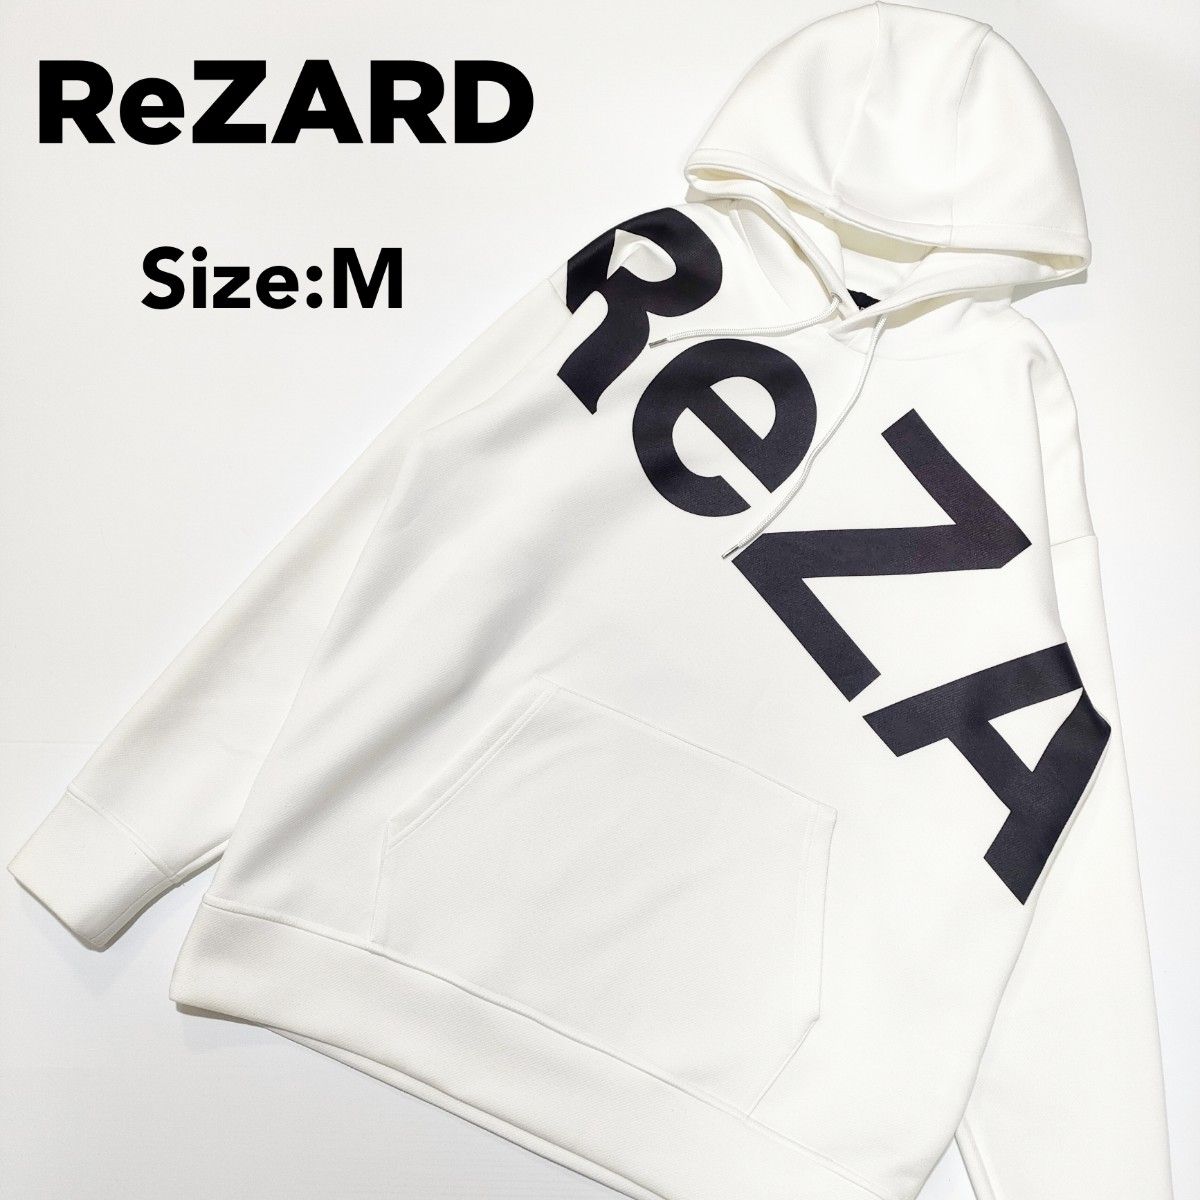 ReZARD/リザード/ヒカル/パーカー/Size:M/匿名配送/送料無料